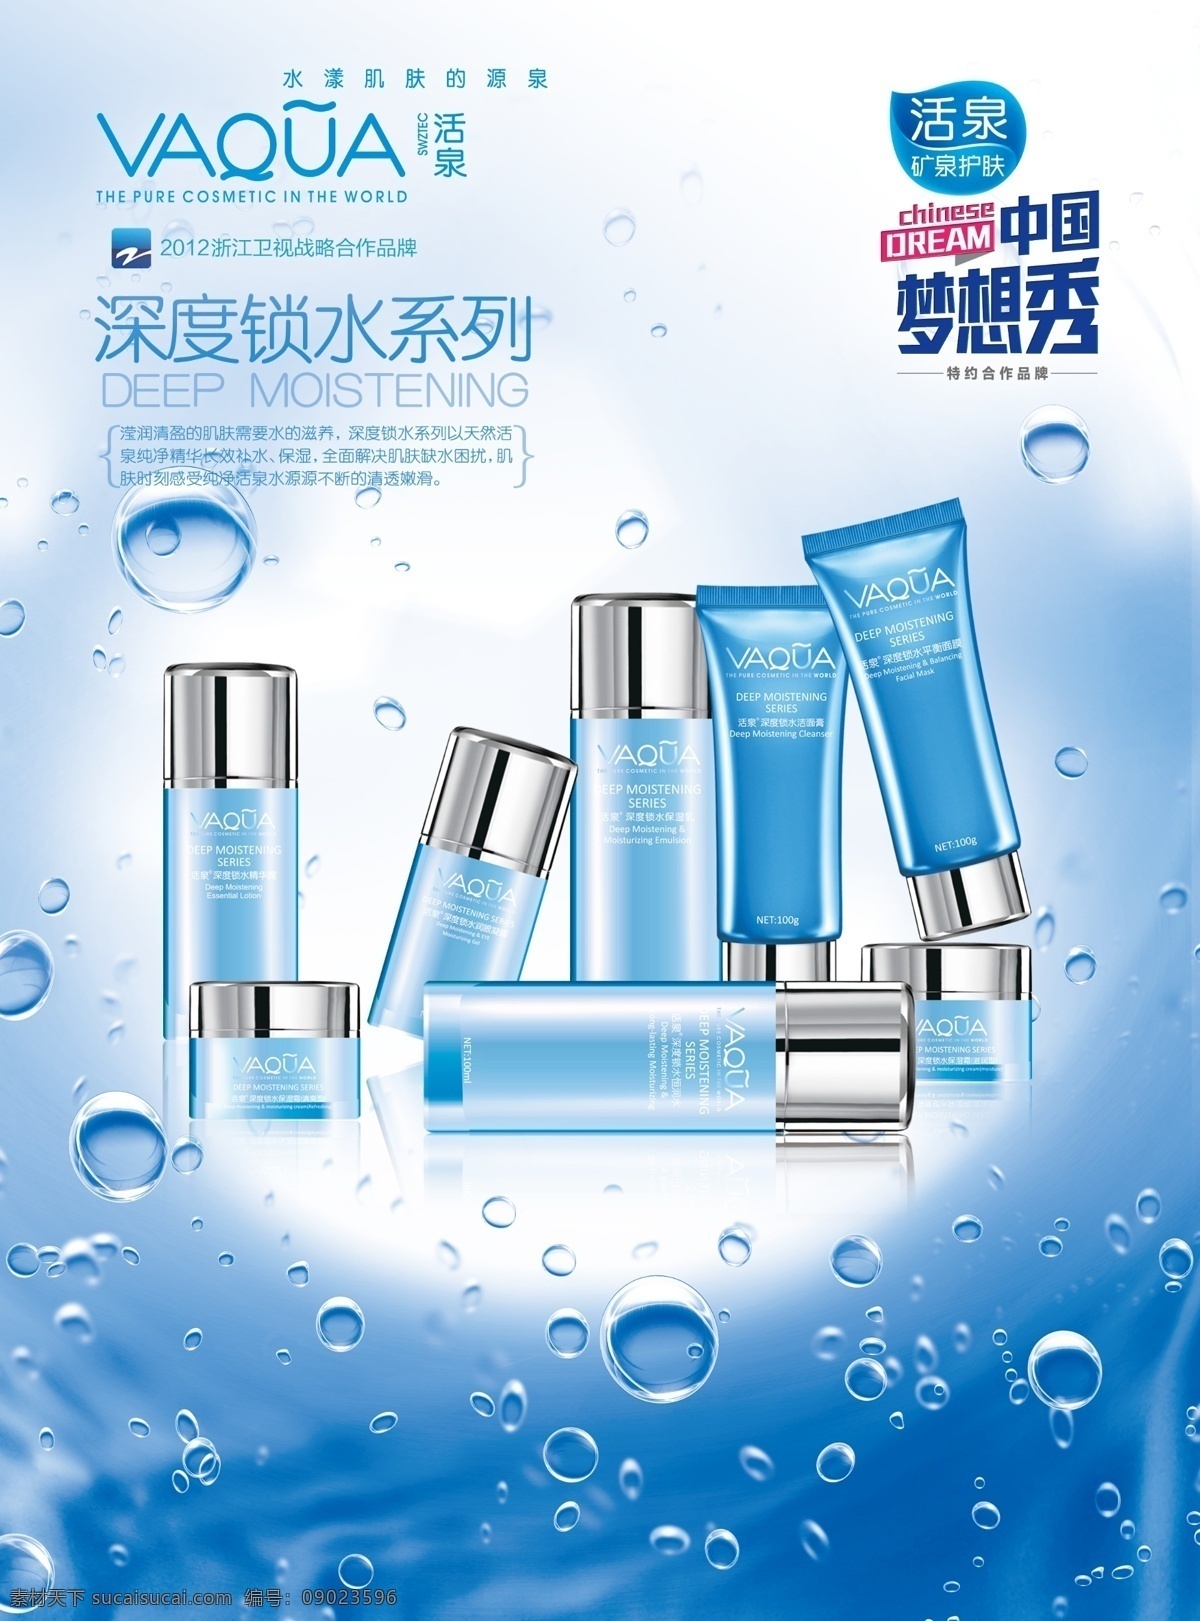 产品海报 产品 水 水泡 化妆品 蓝色 中国梦想秀 泉水 护肤品 透明 清凉 广告设计模板 源文件